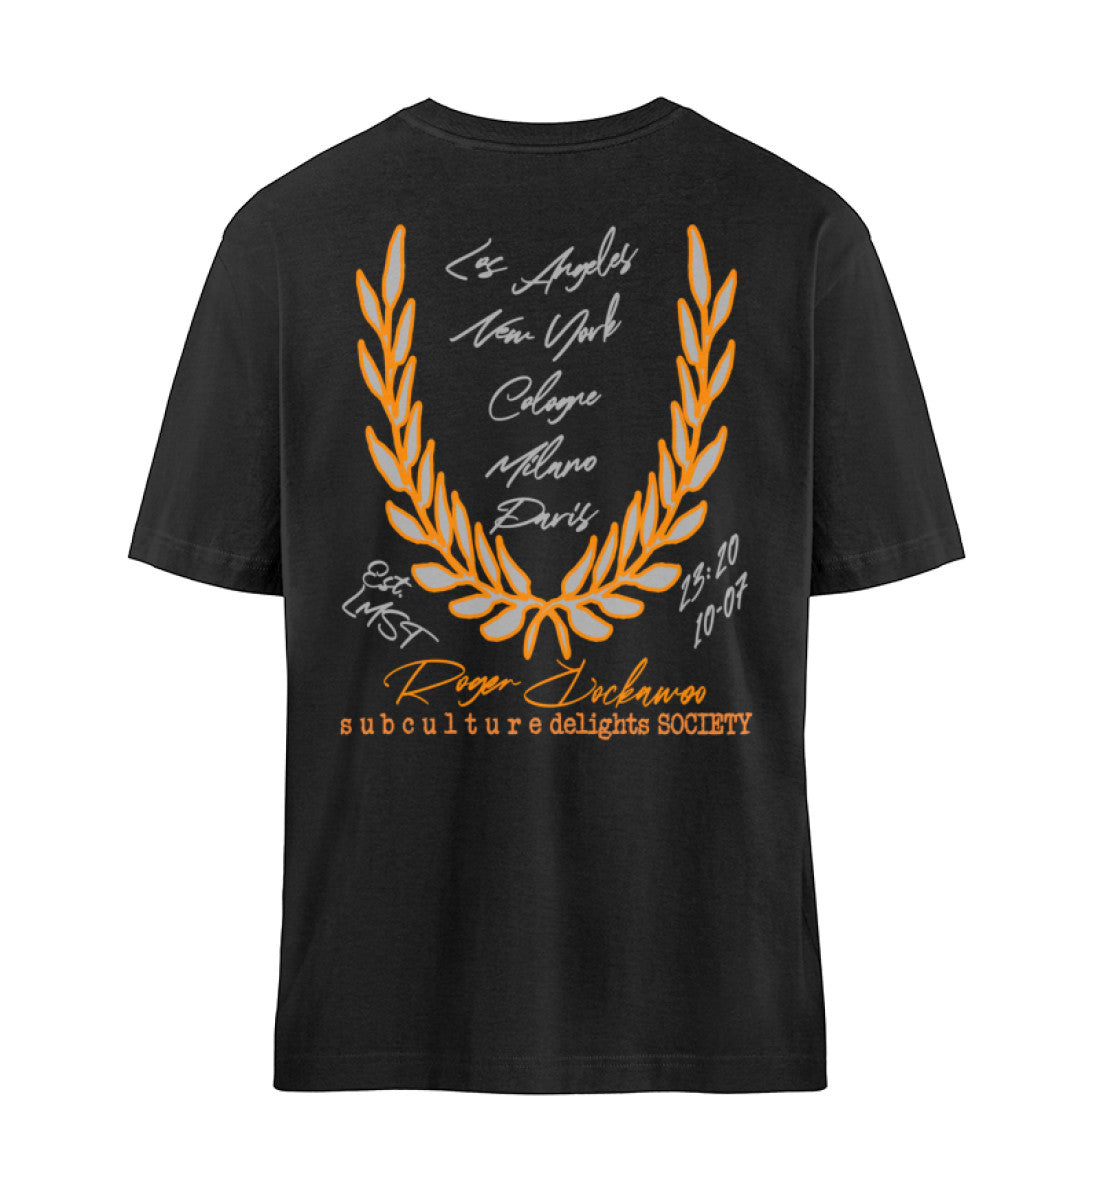 Schwarzes T-Shirt Unisex Relaxed Fit für Frauen und Männer bedruckt mit dem Design der Roger Rockawoo Kollektion punk is not dead horse